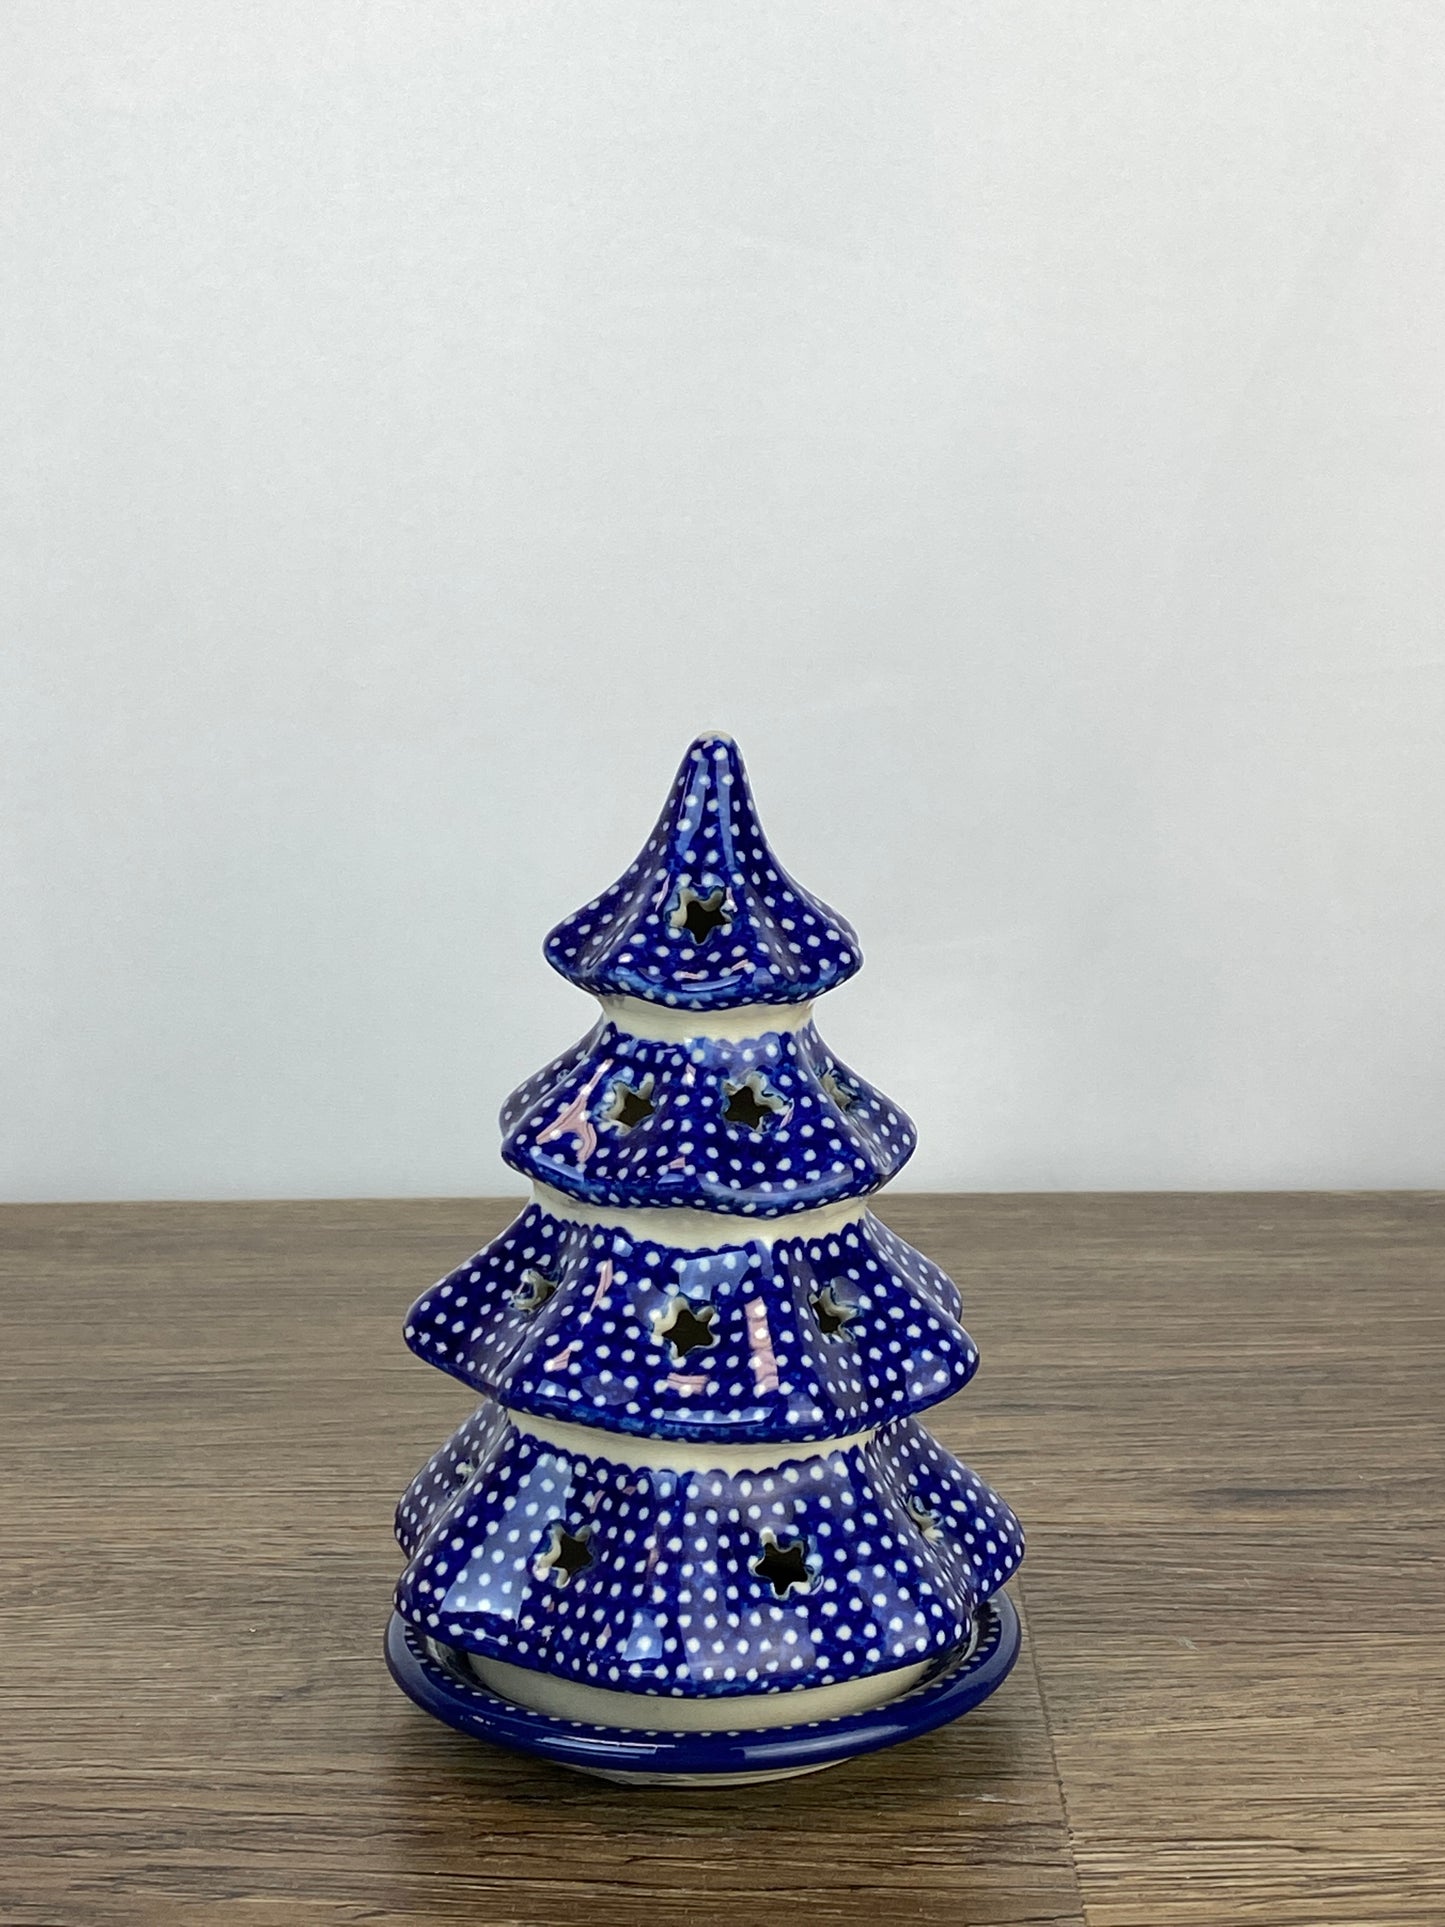 Small 6" Unikat Christmas Tree - Shape 512 - Pattern U1123